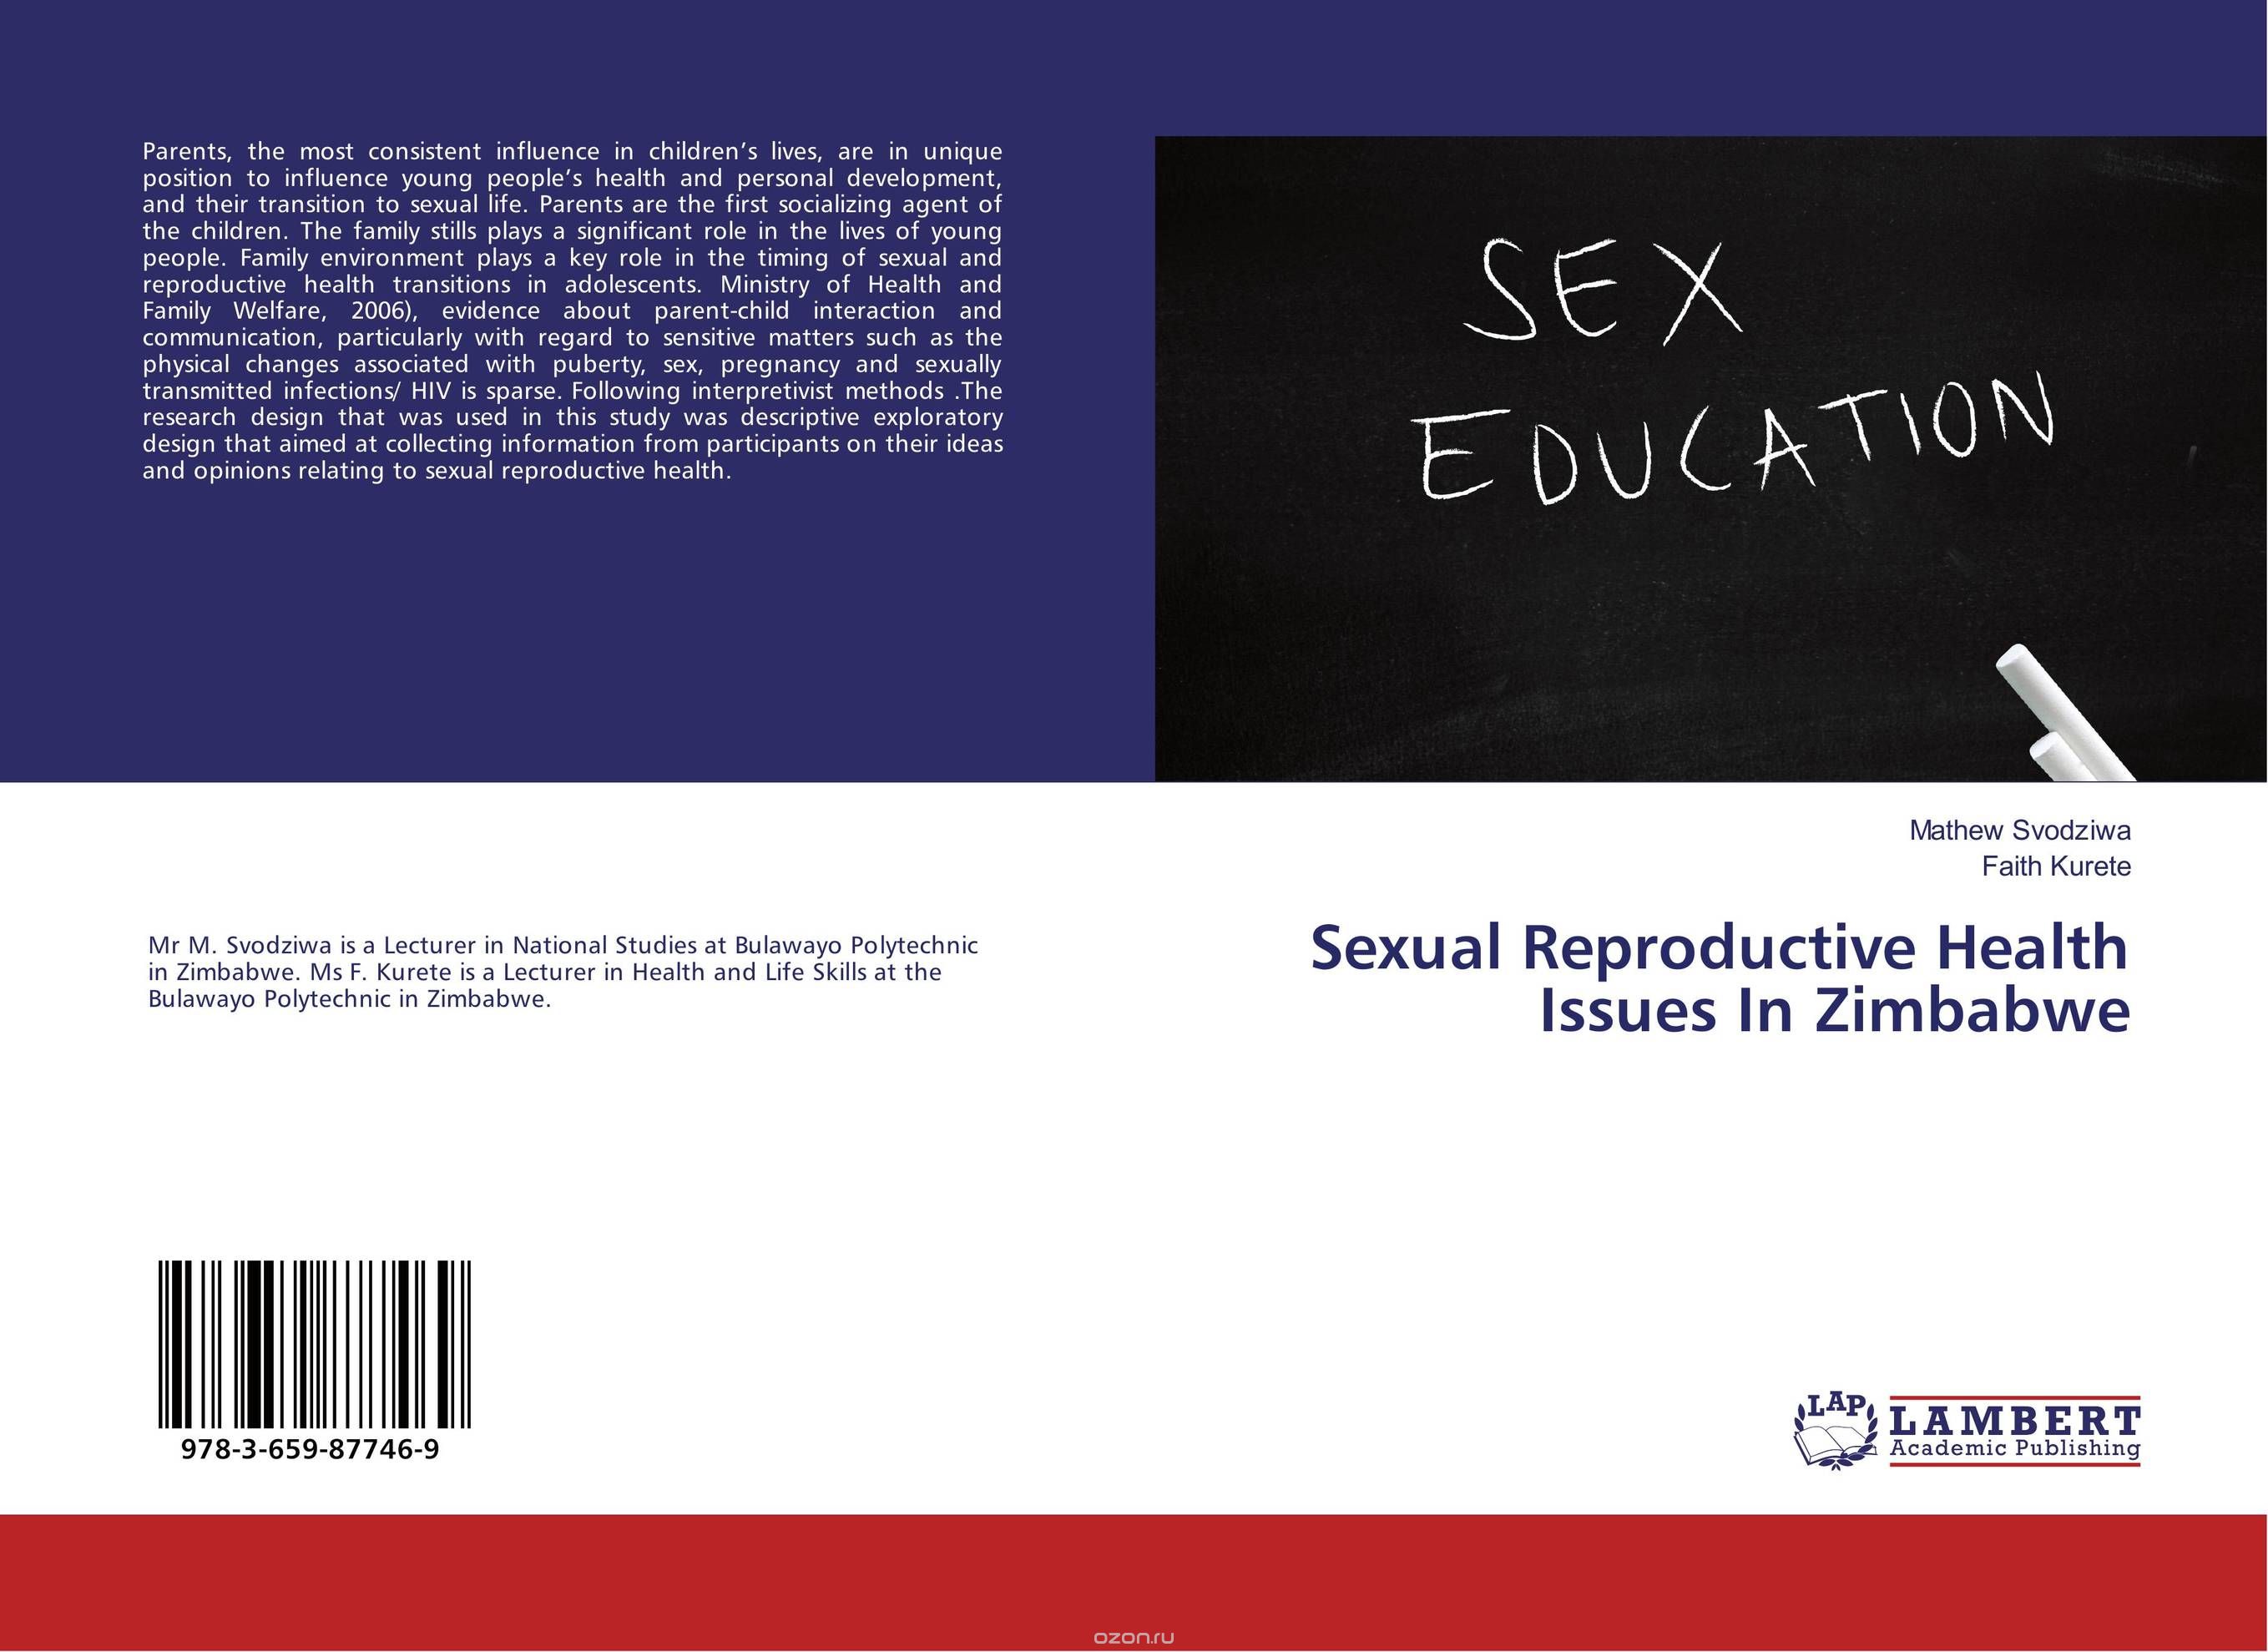 Скачать книгу "Sexual Reproductive Health Issues In Zimbabwe"